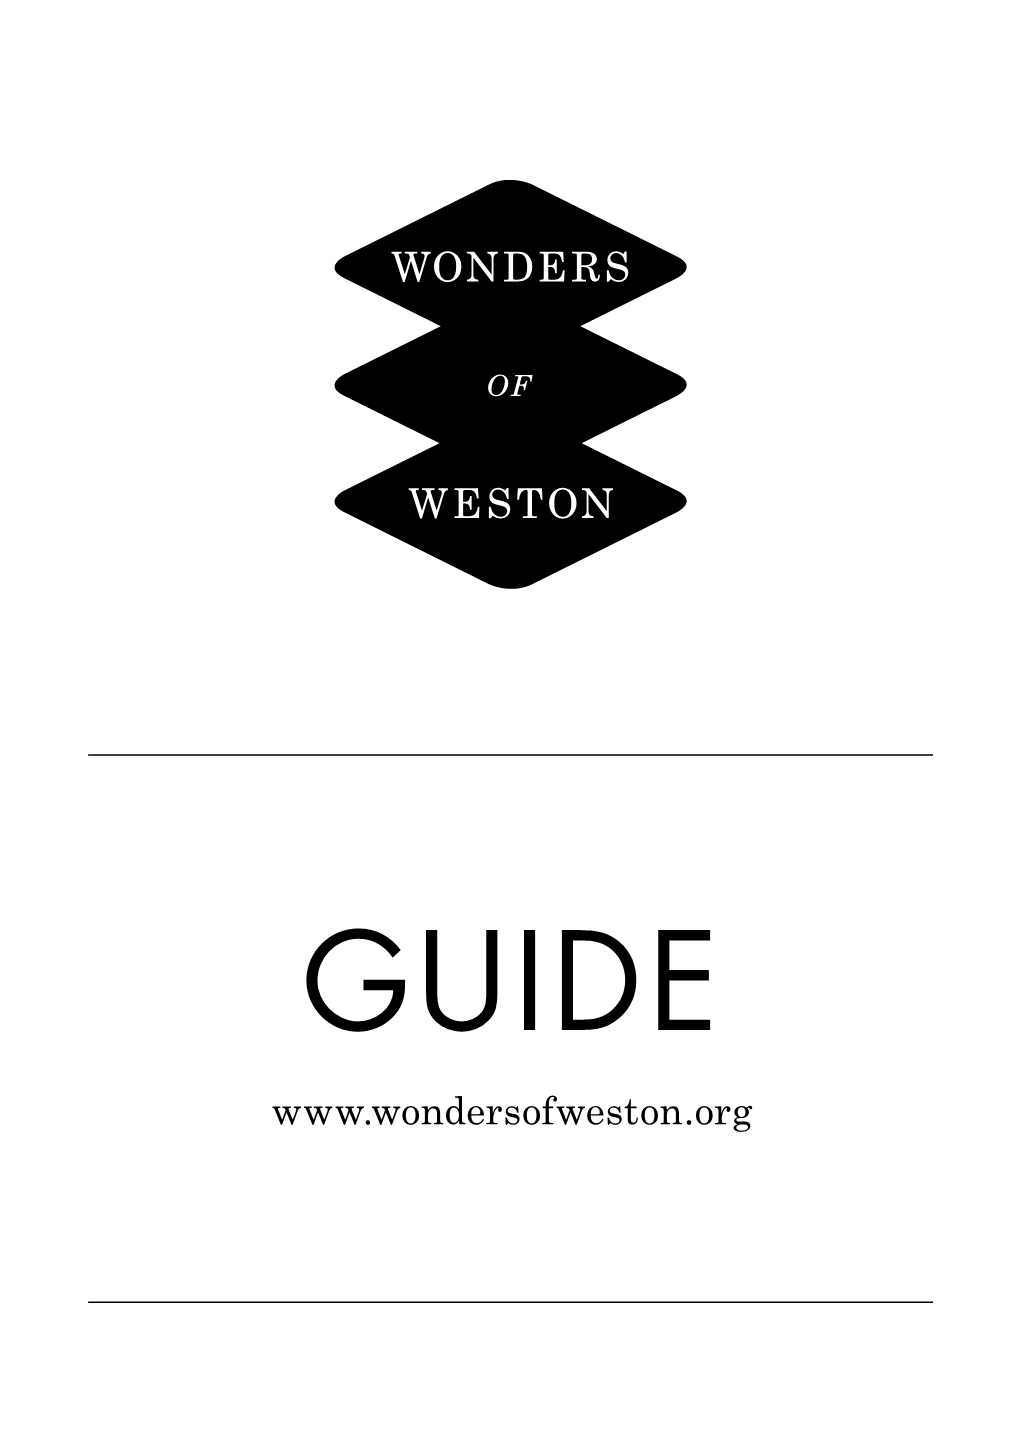 Wonders of Weston Guide